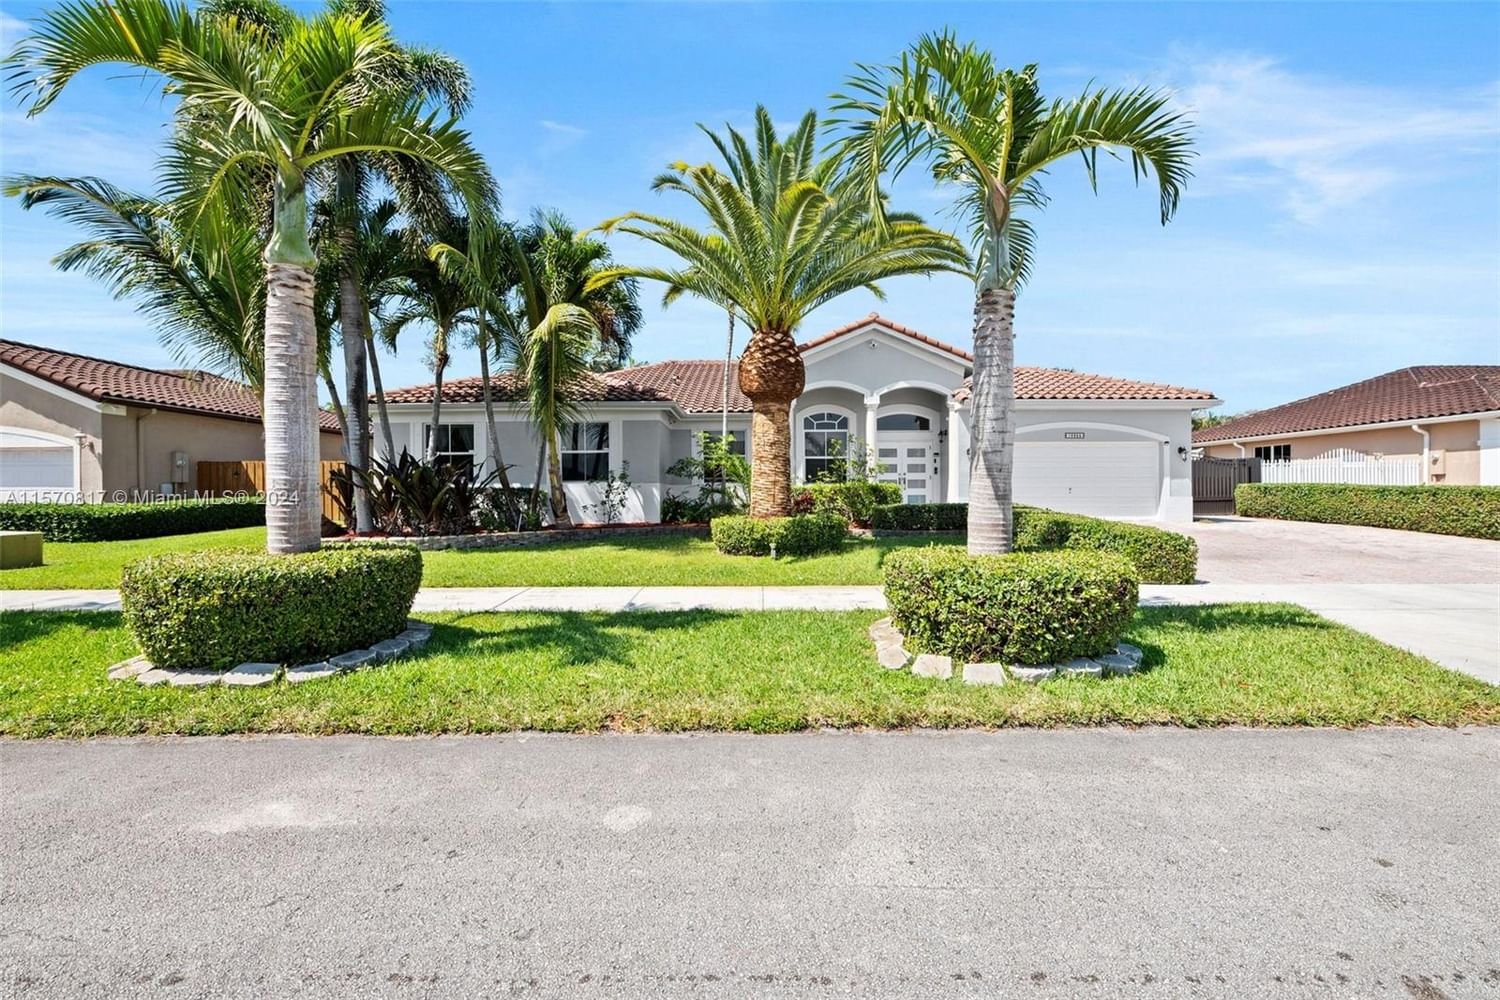 Real estate property located at 16255 50th Ter, Miami-Dade County, CASA LAGO SUB, Miami, FL